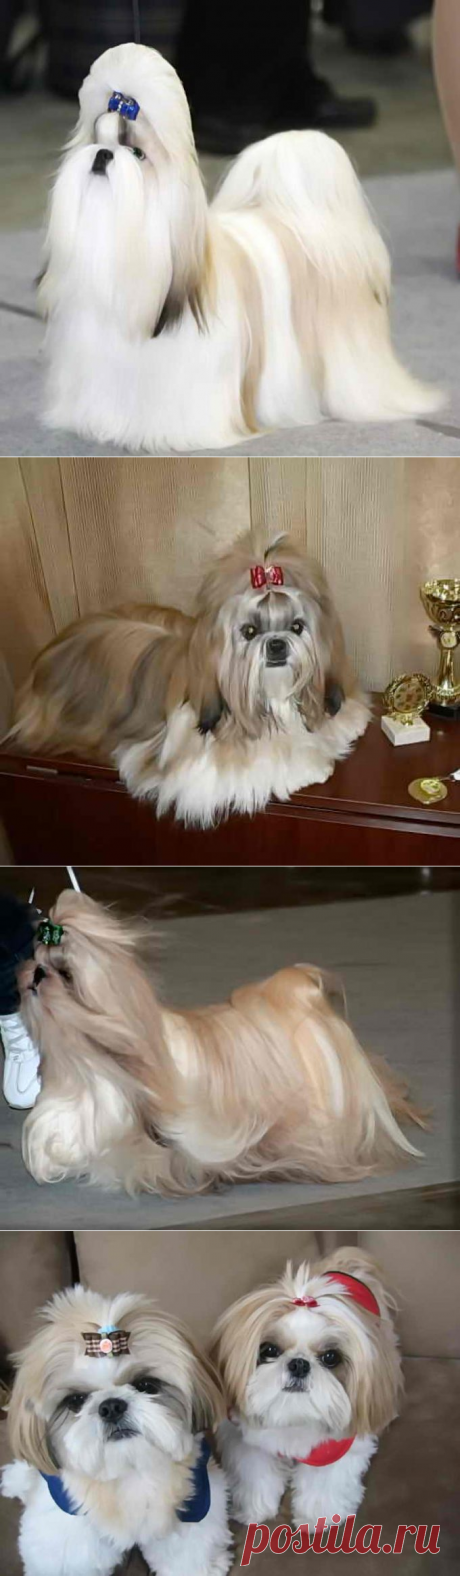 Порода ши-тцу, описание и фото императорской собаки